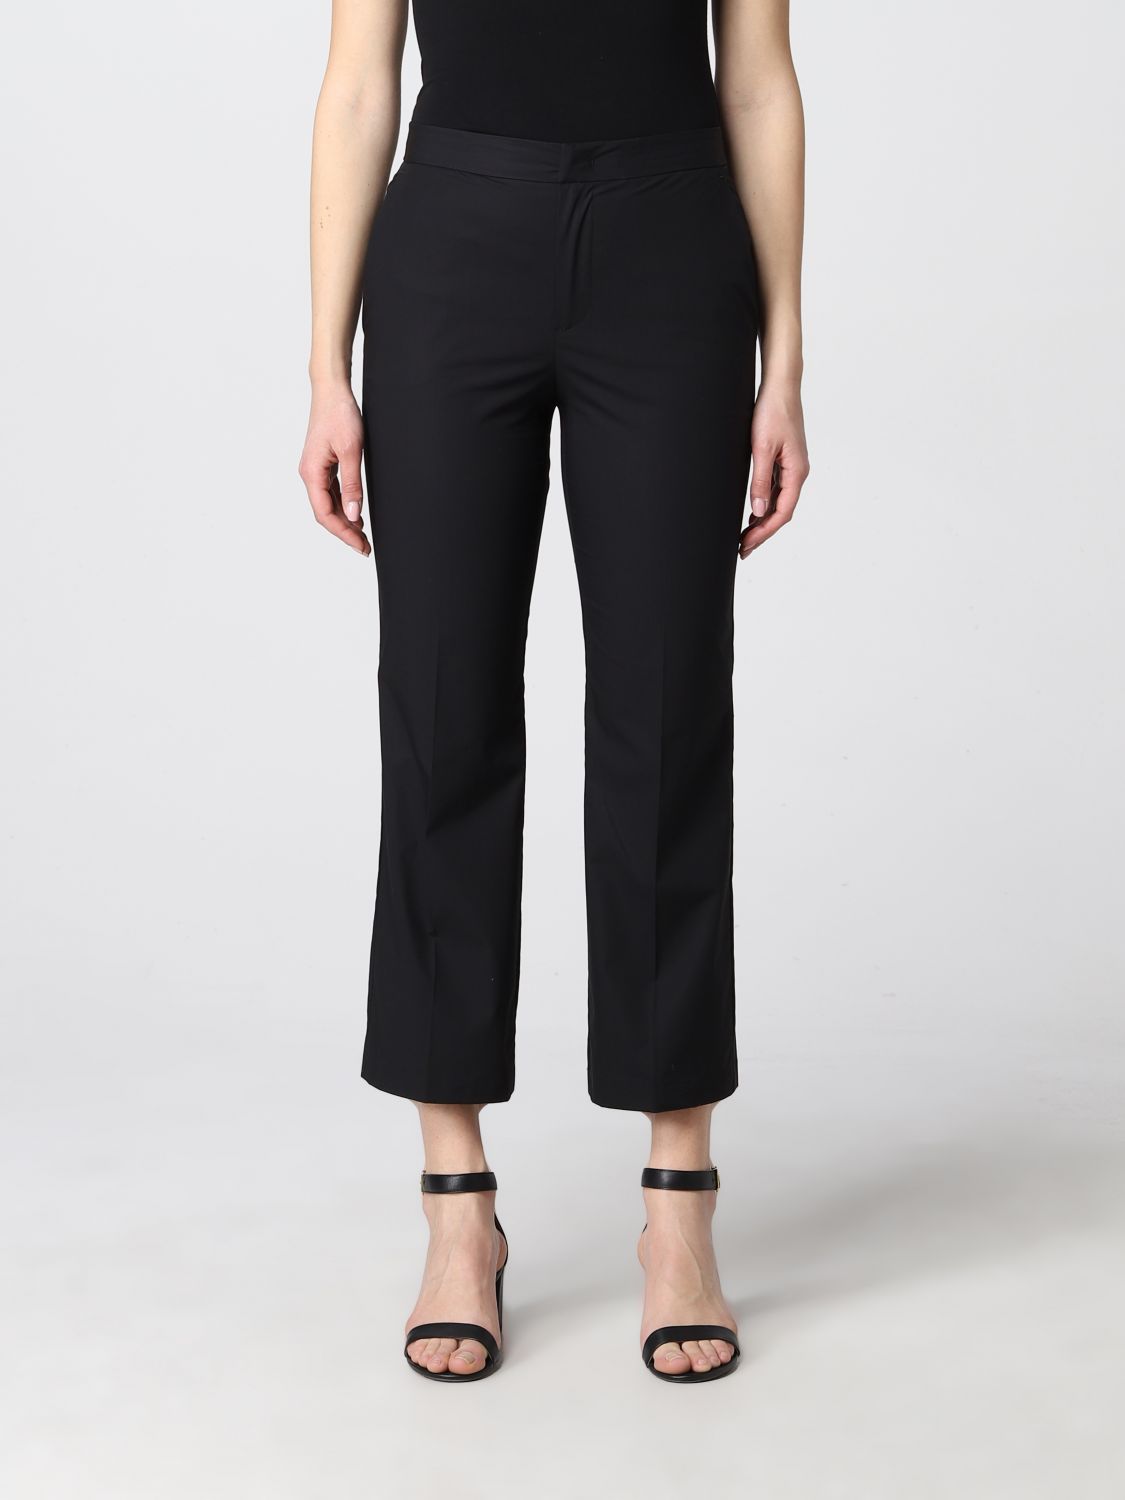 Pantalone Twinset: Pantalone cropped Twinset in cotone stretch nero 1